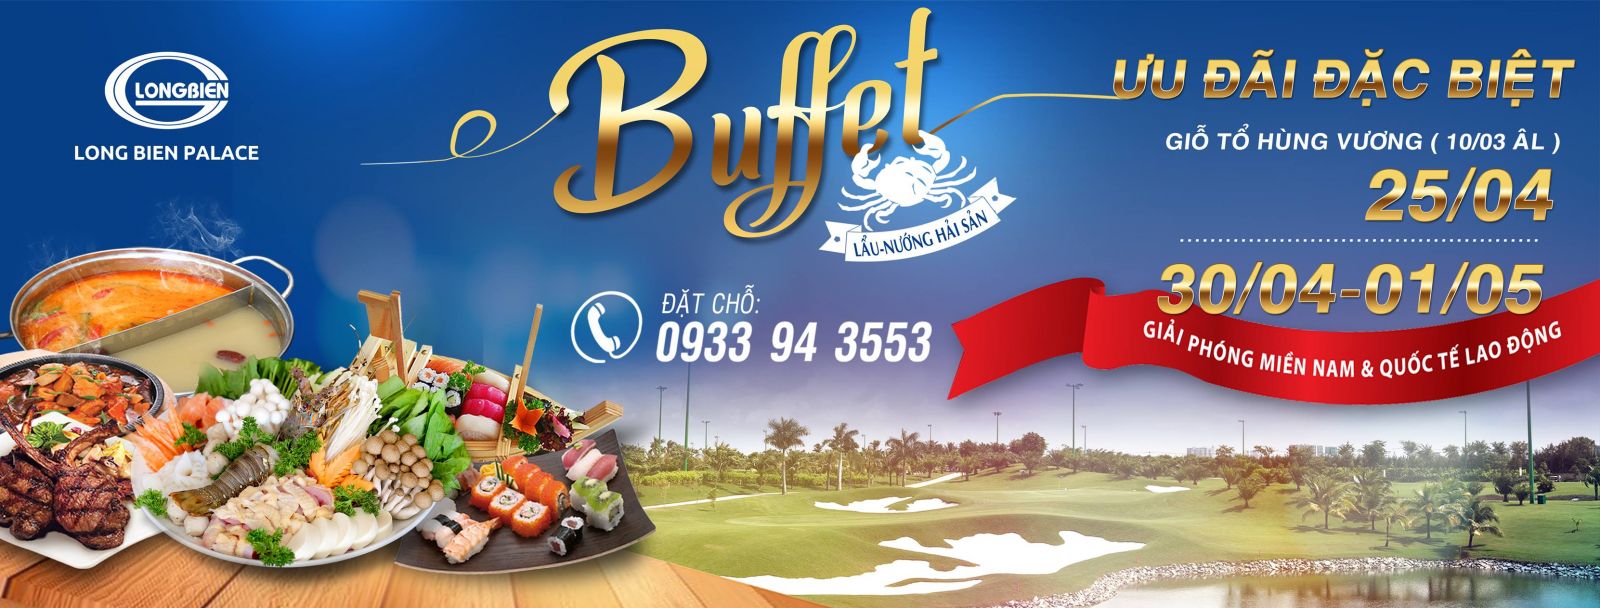 Long Biên palace - Sân Golf Long Biên - Địa điểm thưởng thức Bufet lẩu nướng Hải sản ưu đãi (25/4- 30/4 – 1/5) 1